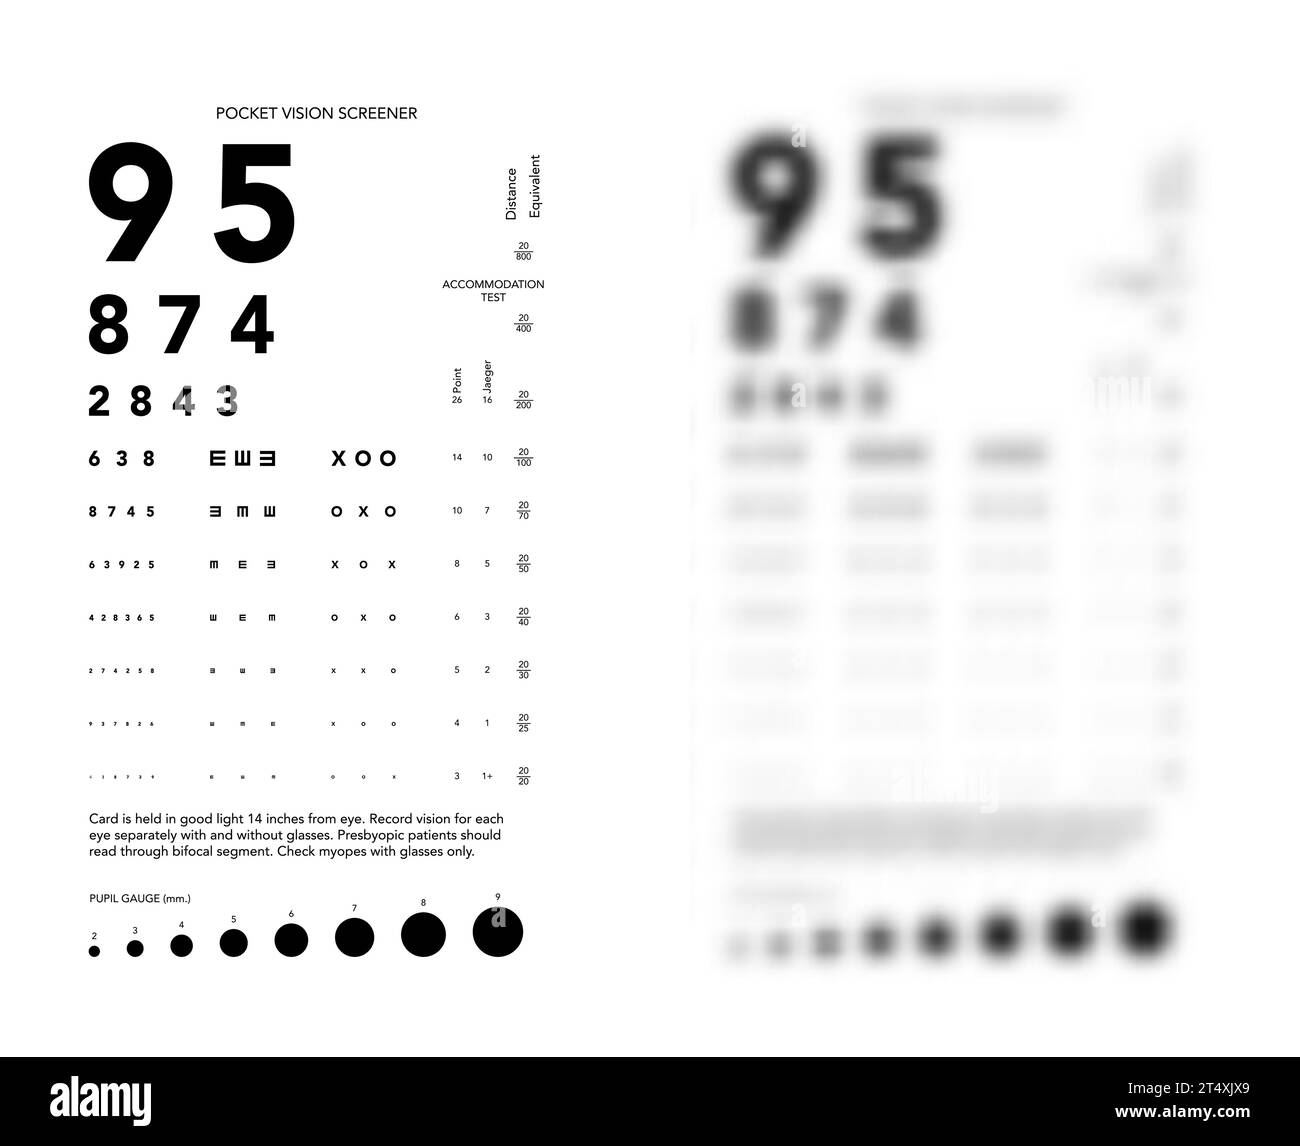 Rosenbaum Pocket Vision Screener Eye test blurred grafico illustrazione medica con numeri. Contorno stile di schizzo vettoriale di linea isolato su sfondo bianco e nero. Pannello di visione oftalmico per esame Illustrazione Vettoriale